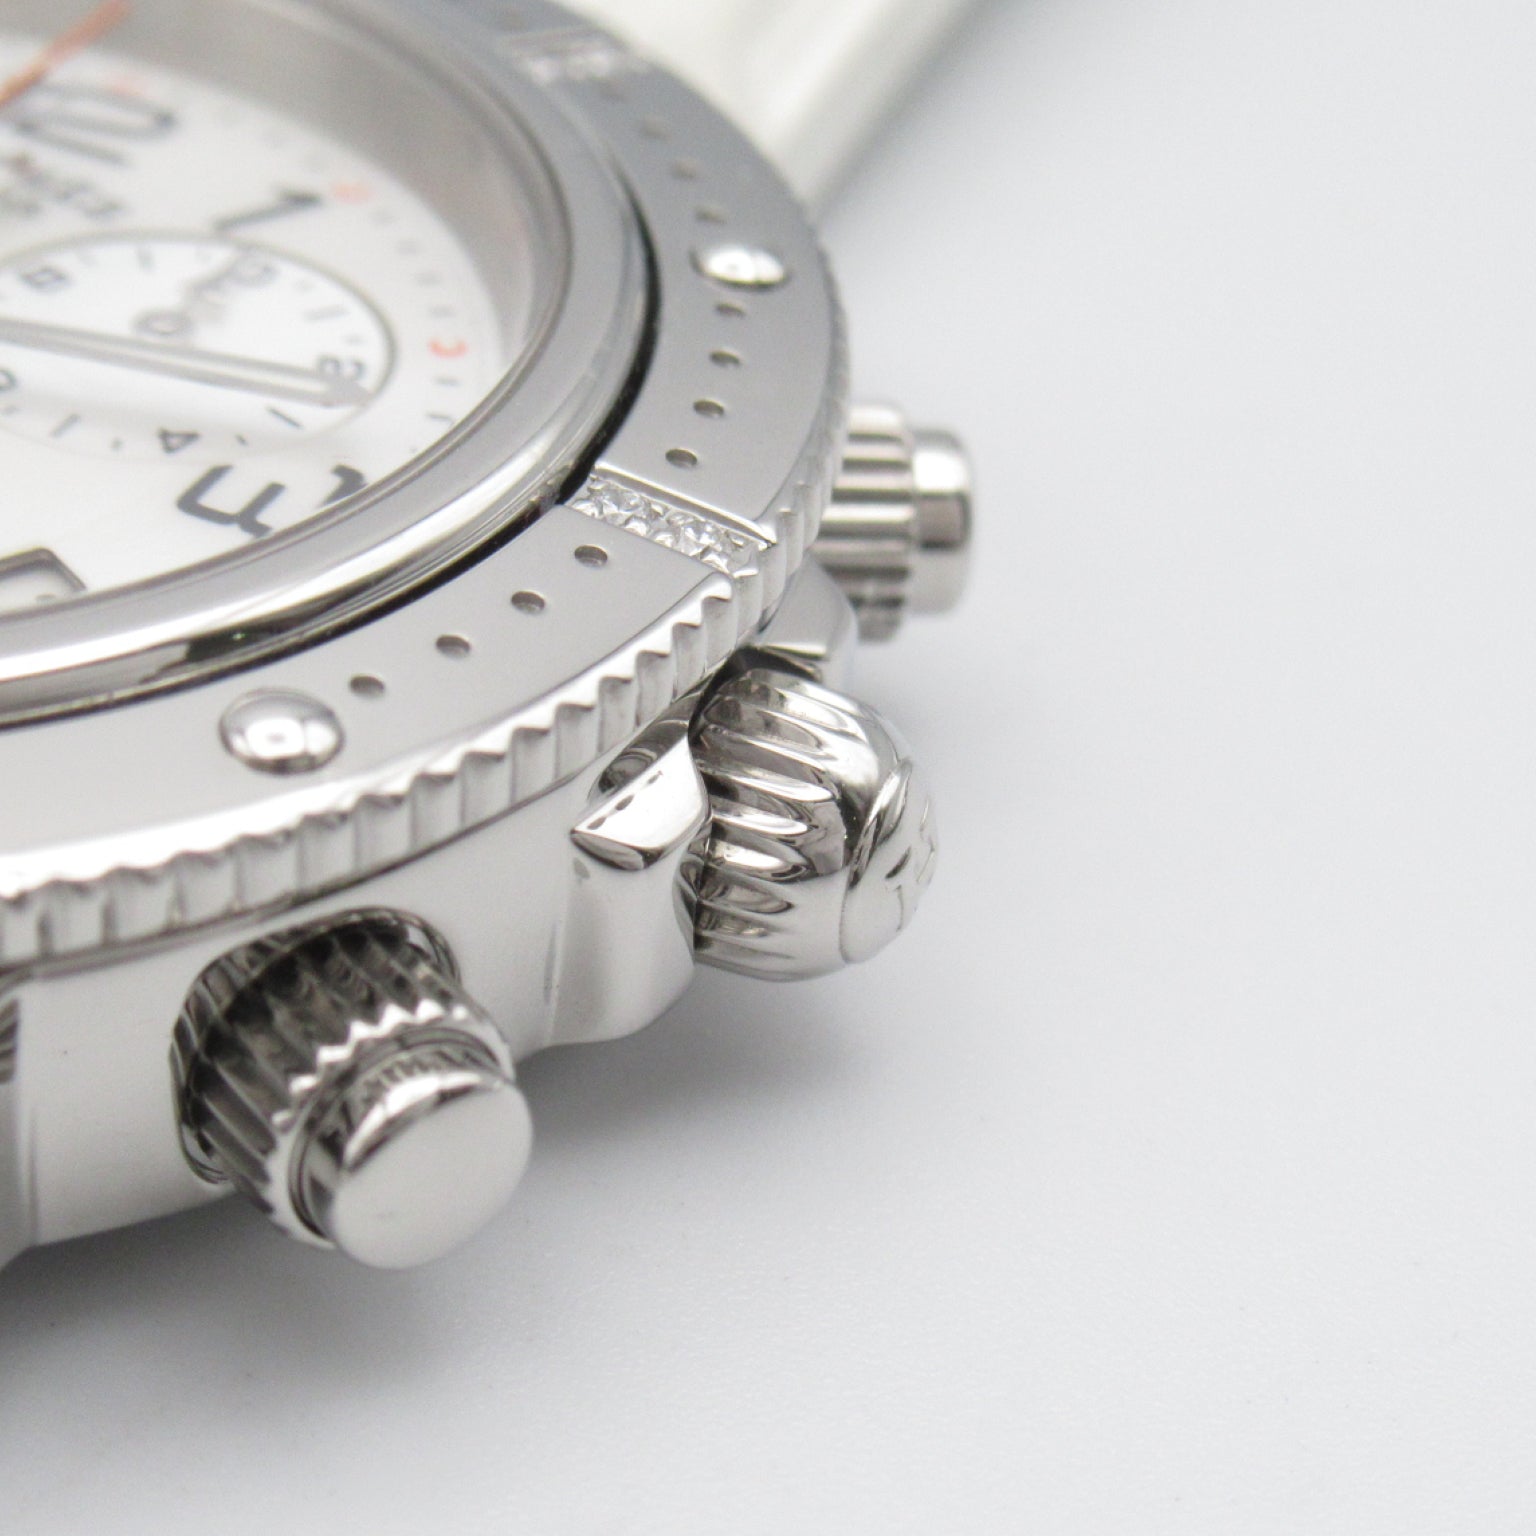 Hermes Hermes Clipperer Diver Chronograph Diamond-Bezel  Watch Stainless Steel Lavender Men White S CP2.430